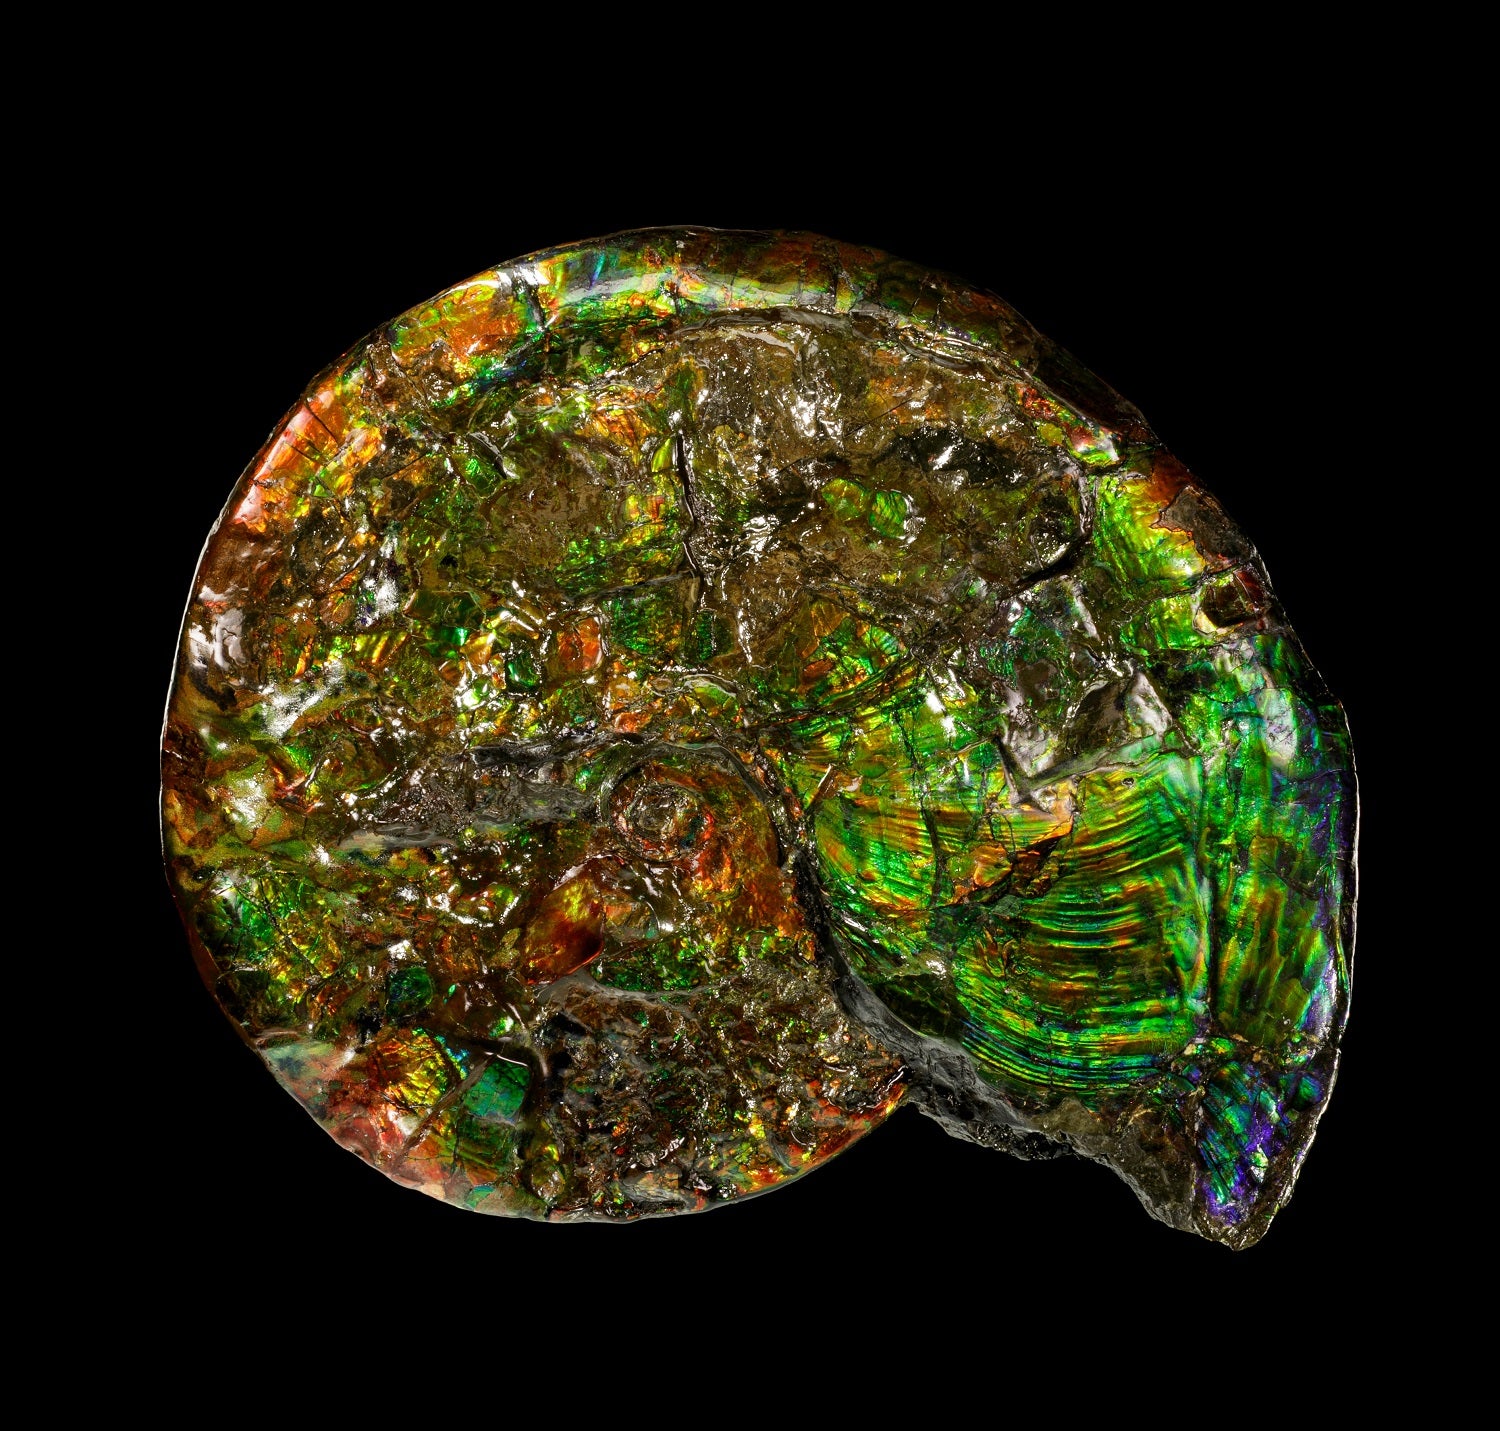 Amonita opalizada iridiscente sobre negro en un catálogo de minerales